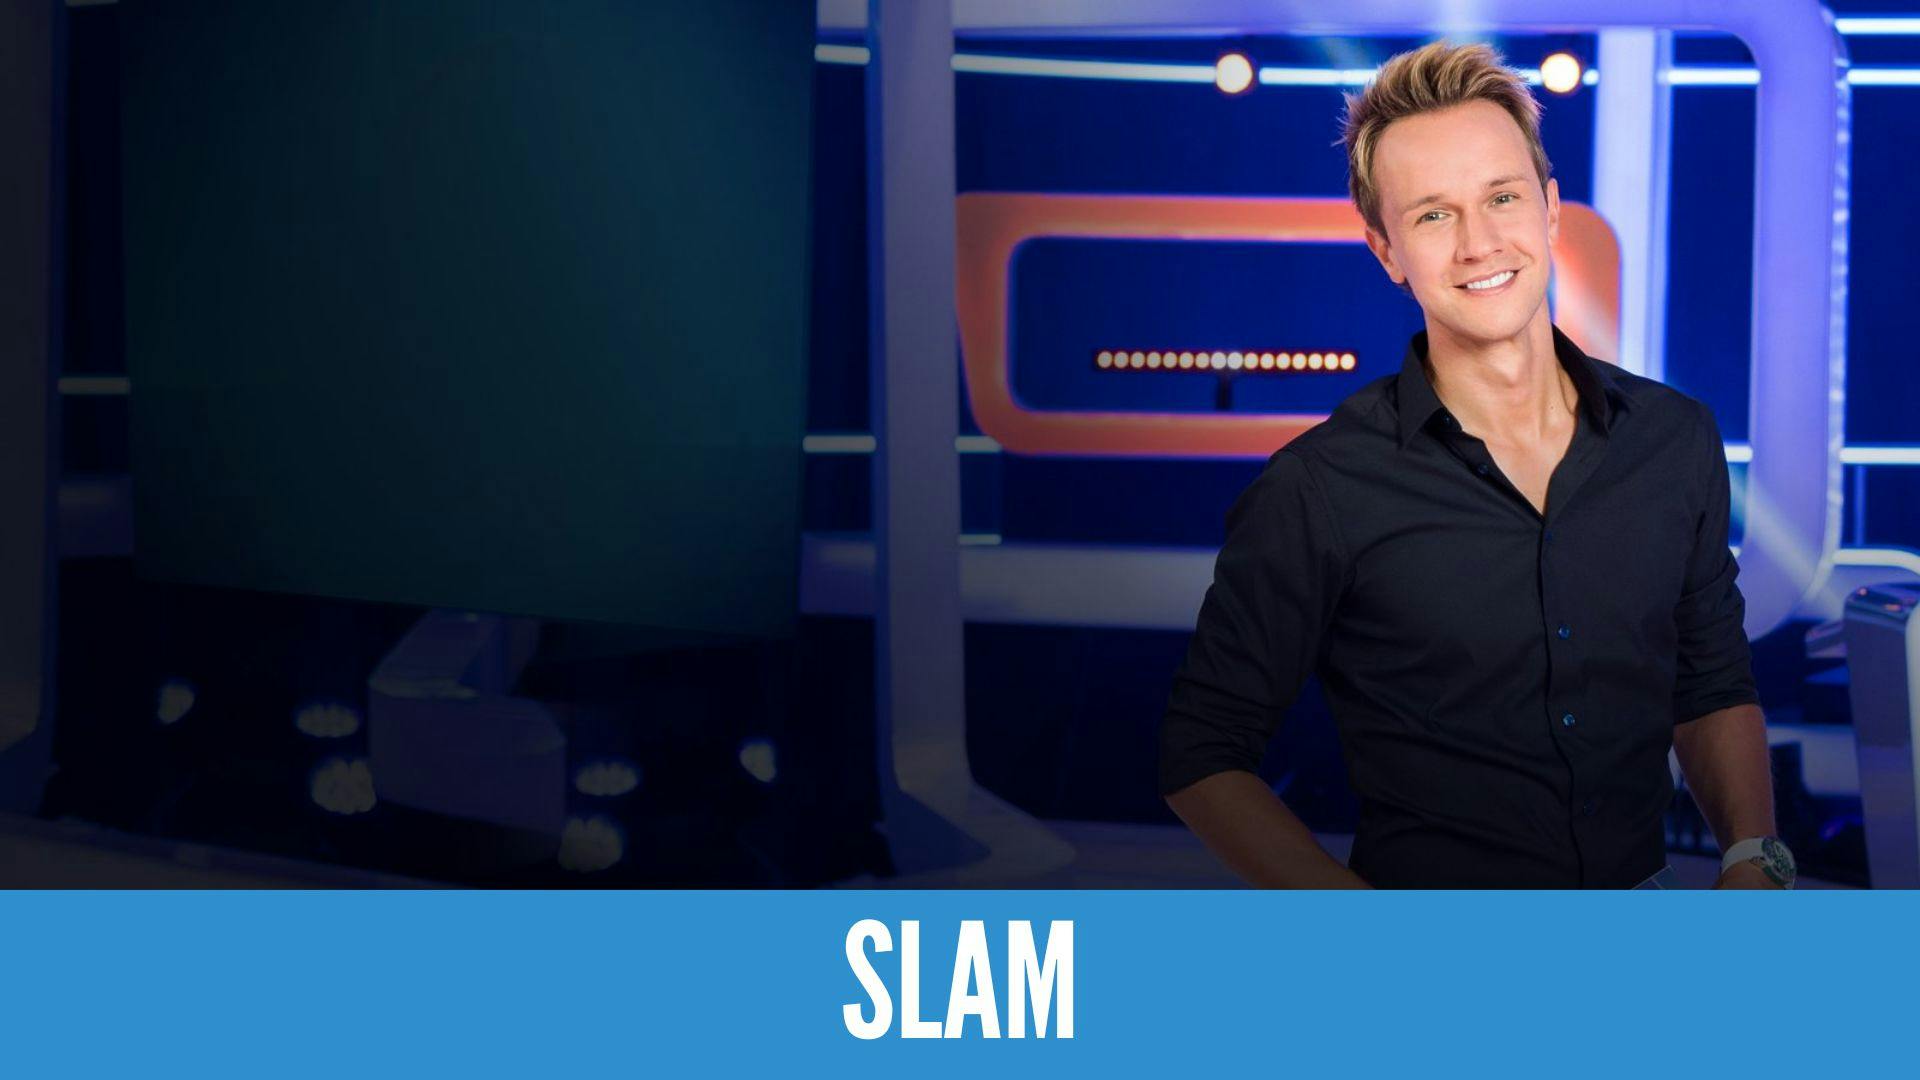 photo de l’animateur du jeu télévisé "Slam" et un titre sur fond bleu